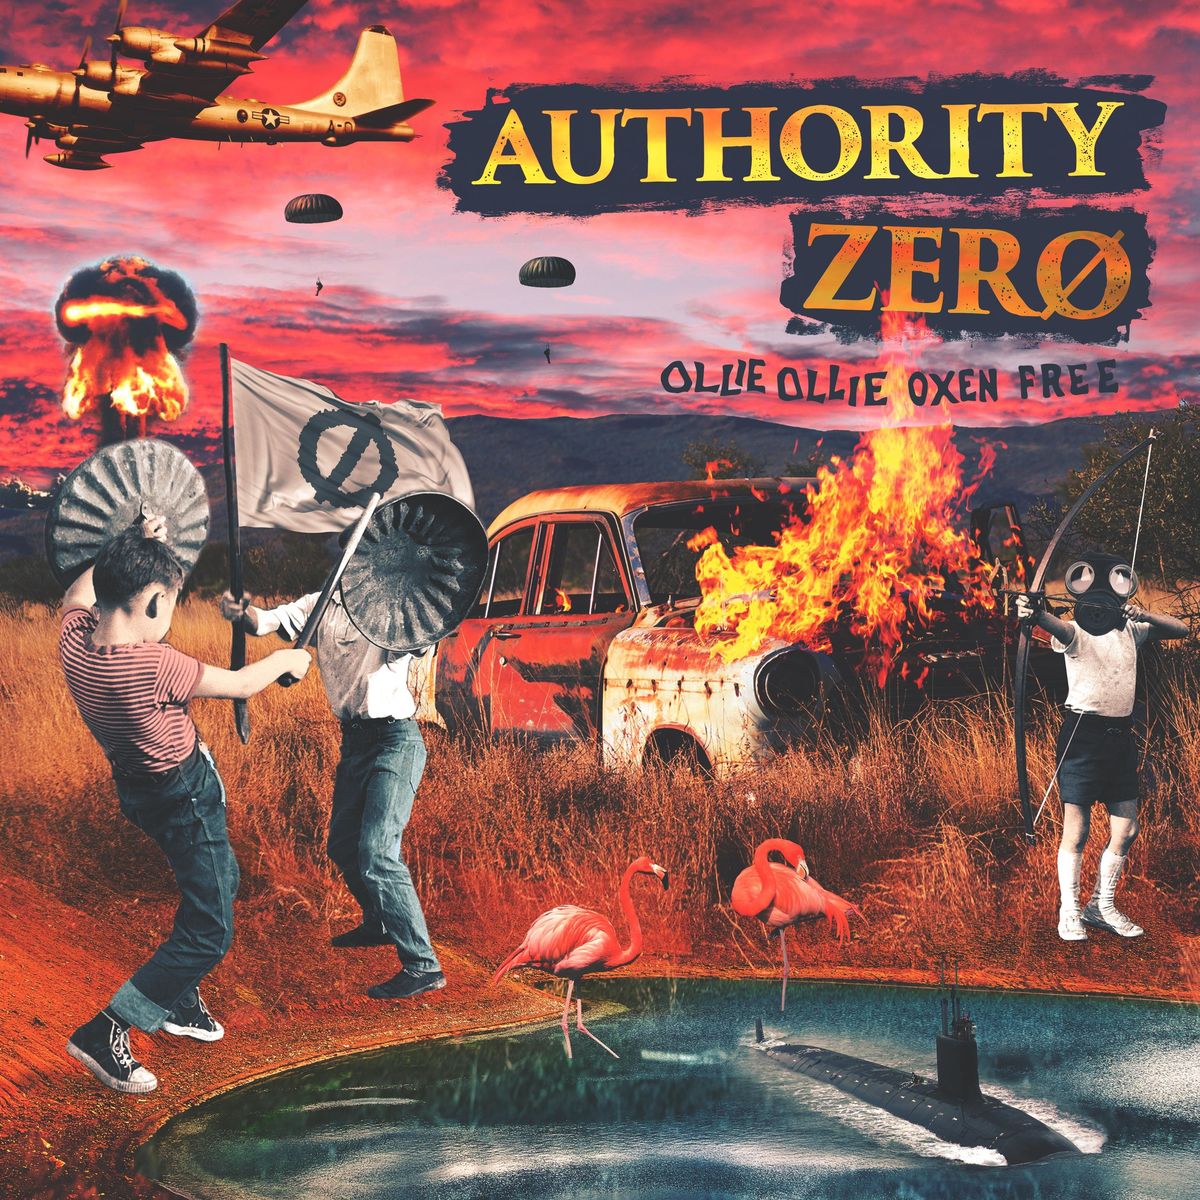 Reseña – review: Authority Zero “Ollie Ollie Oxen Free”